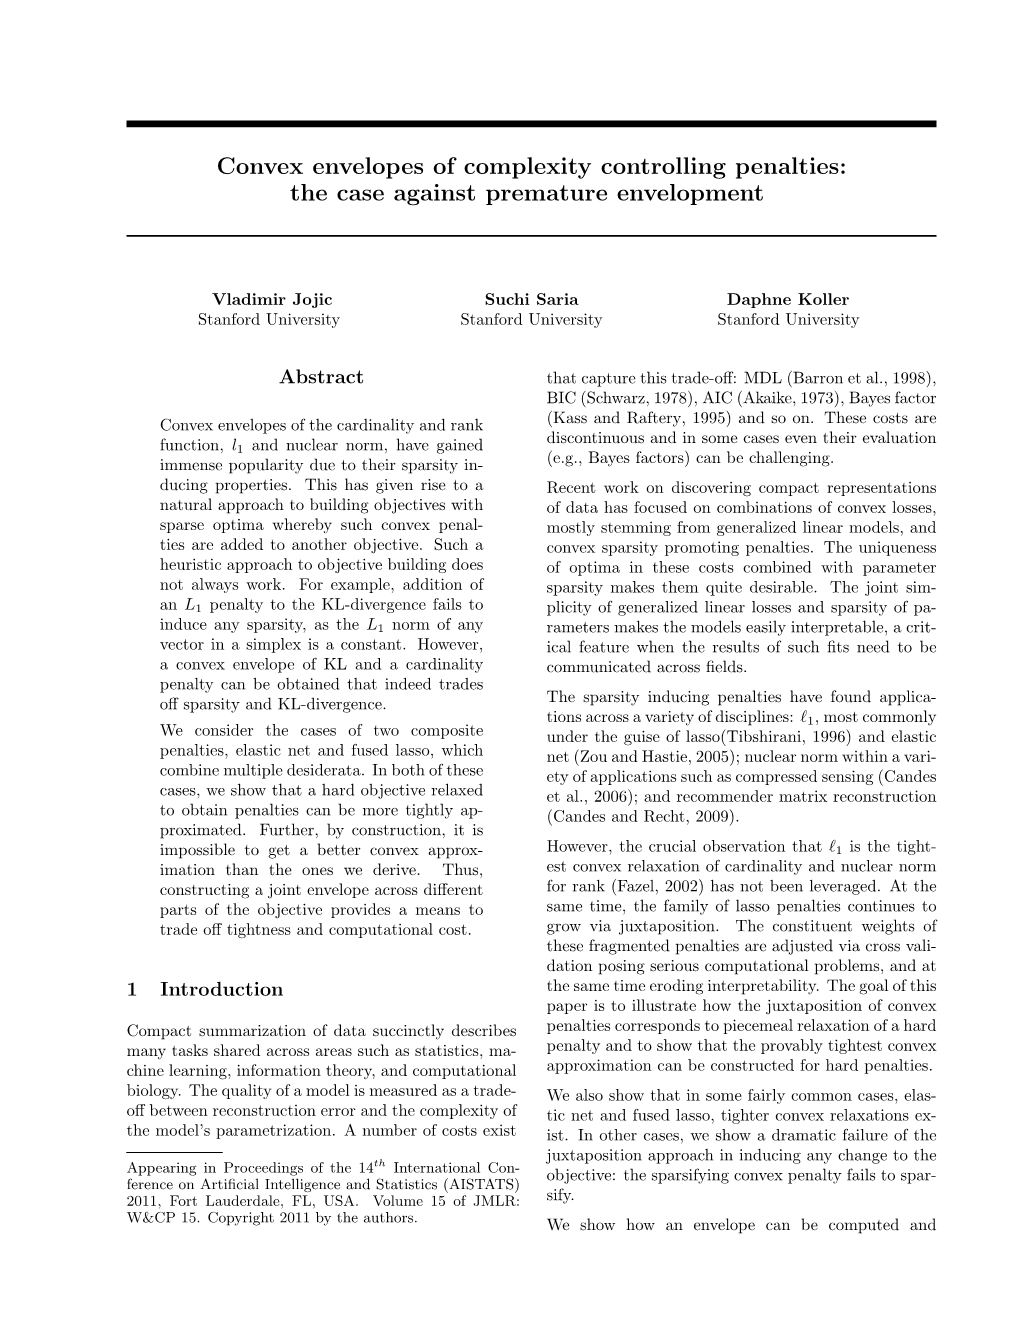 Convex Envelopes of Complexity Controlling Penalties: the Case Against Premature Envelopment